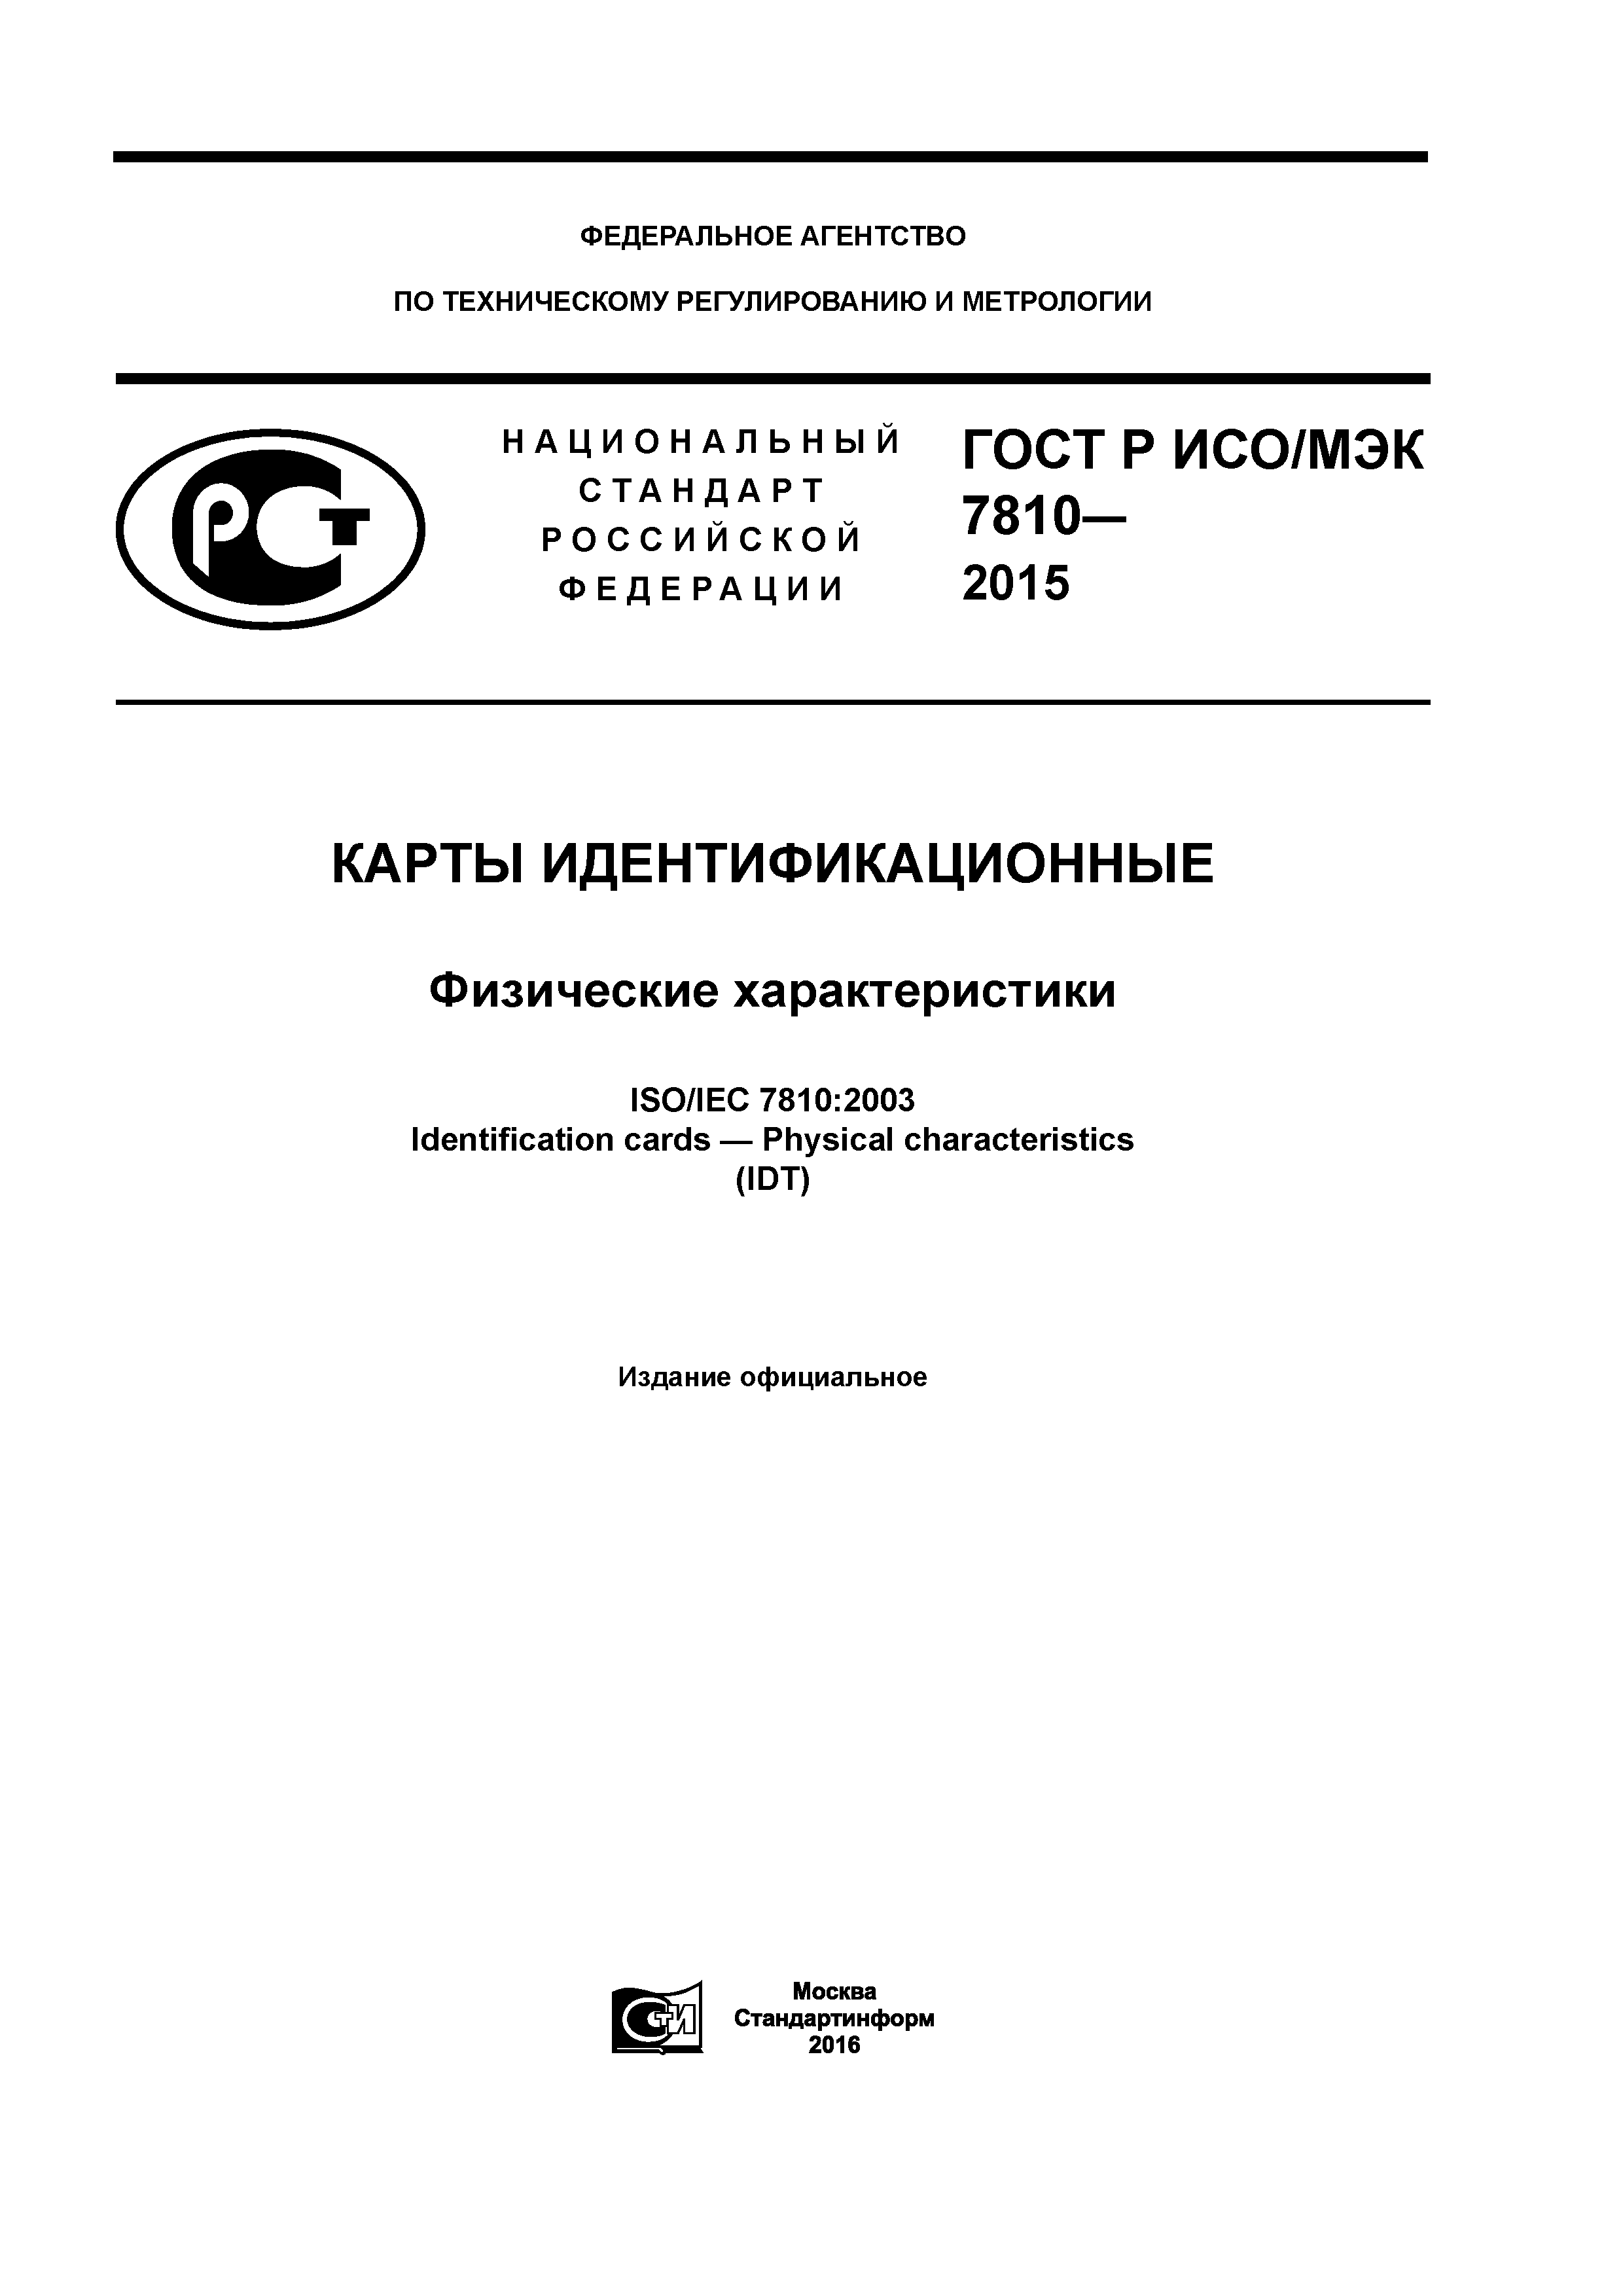 ГОСТ Р ИСО/МЭК 7810-2015